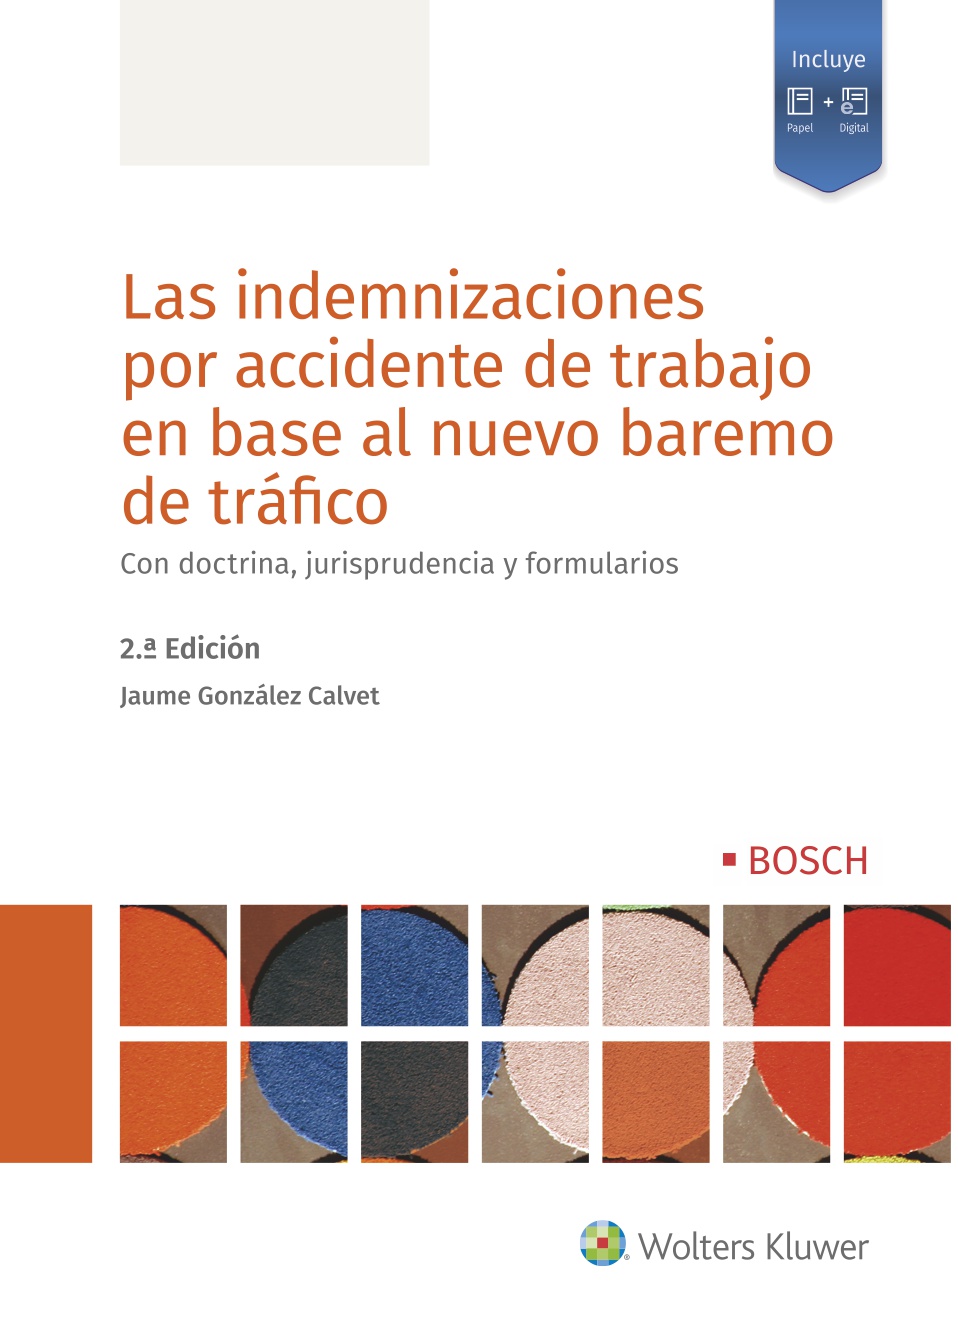 Las indemnizaciones por accidente de trabajo en base al nuevo baremo de tráfico (2.ª Edición)   «Con doctrina, jurisprudencia y formularios»